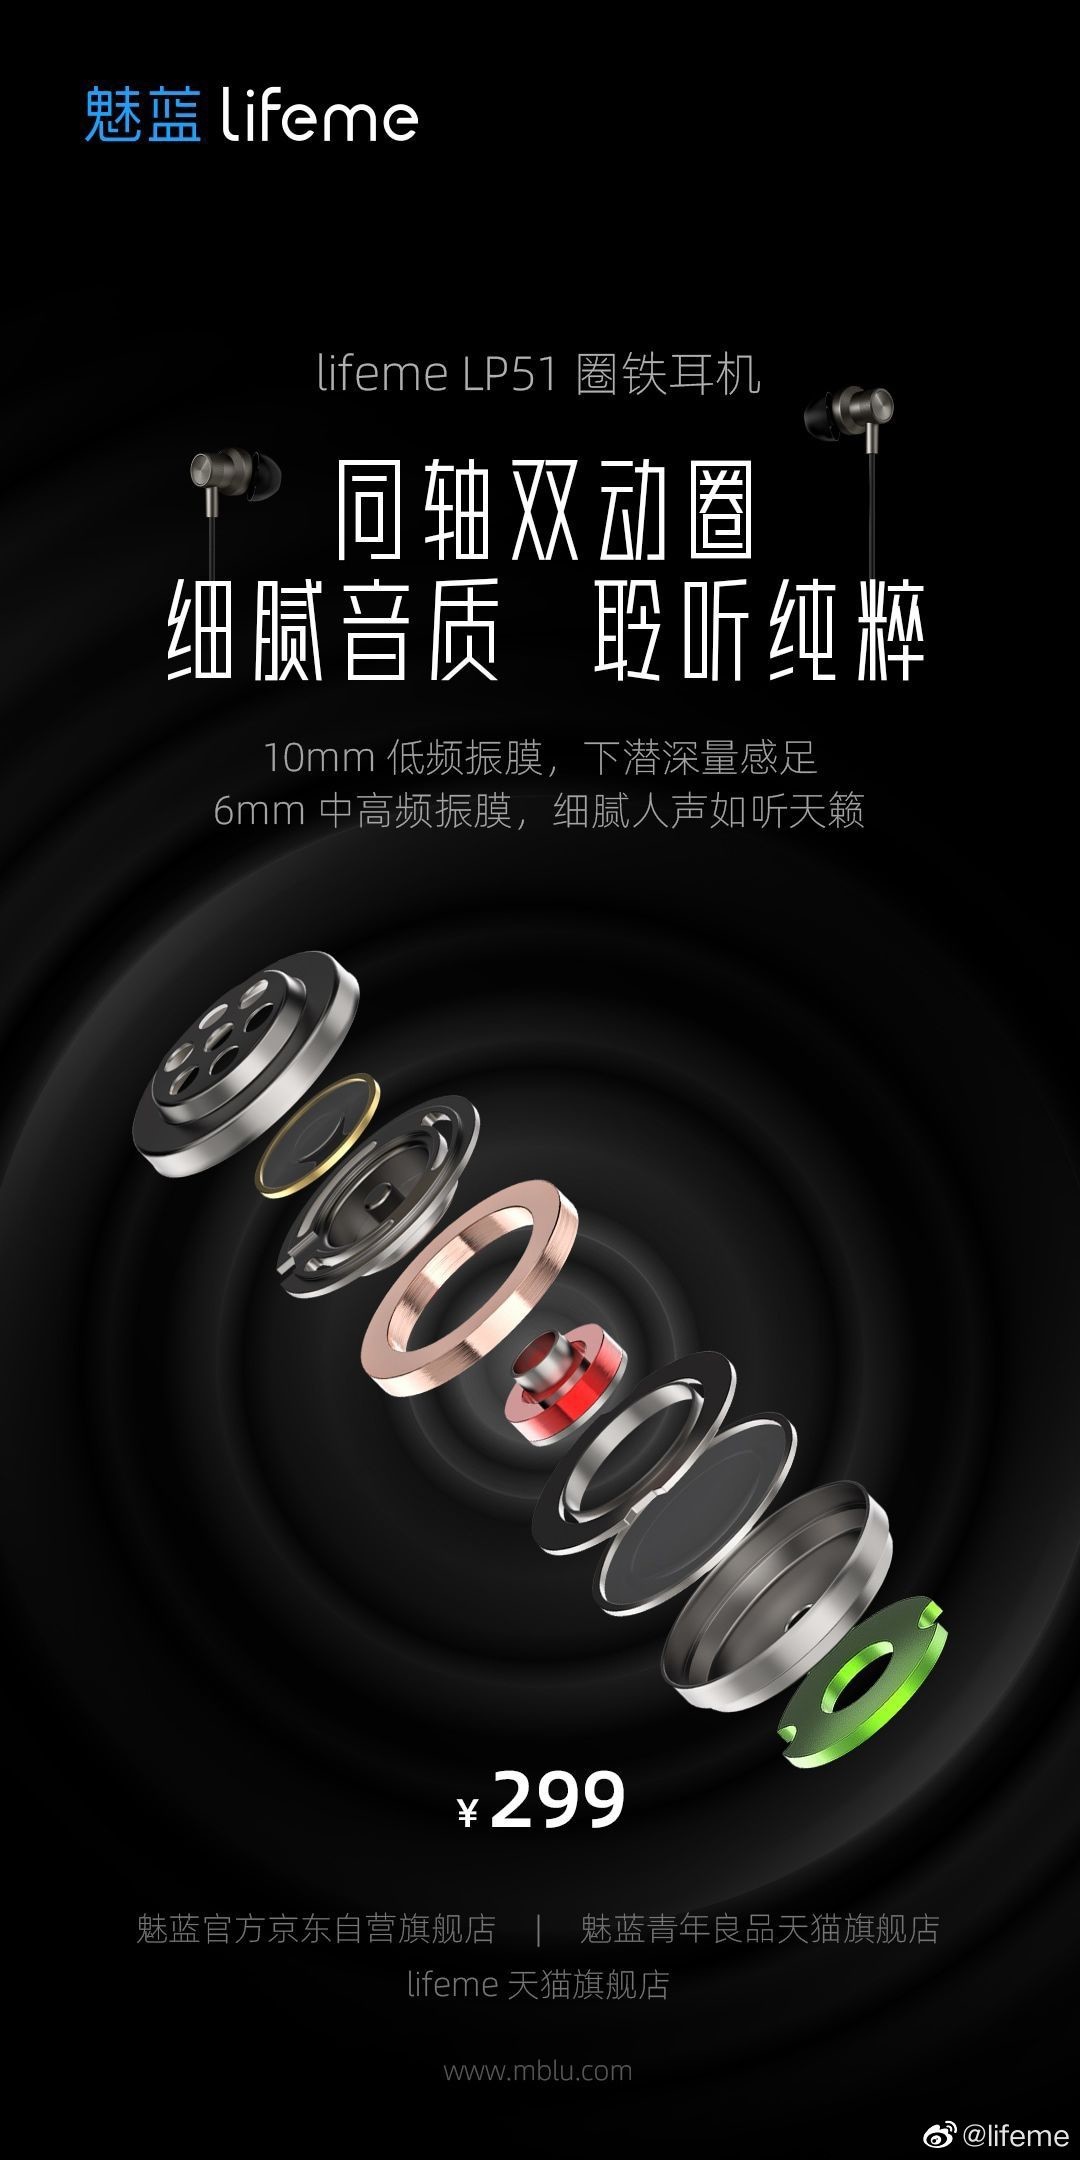 魅蓝 lifeme LP51 圈铁耳机发布：同轴双动圈高频双动铁四单元